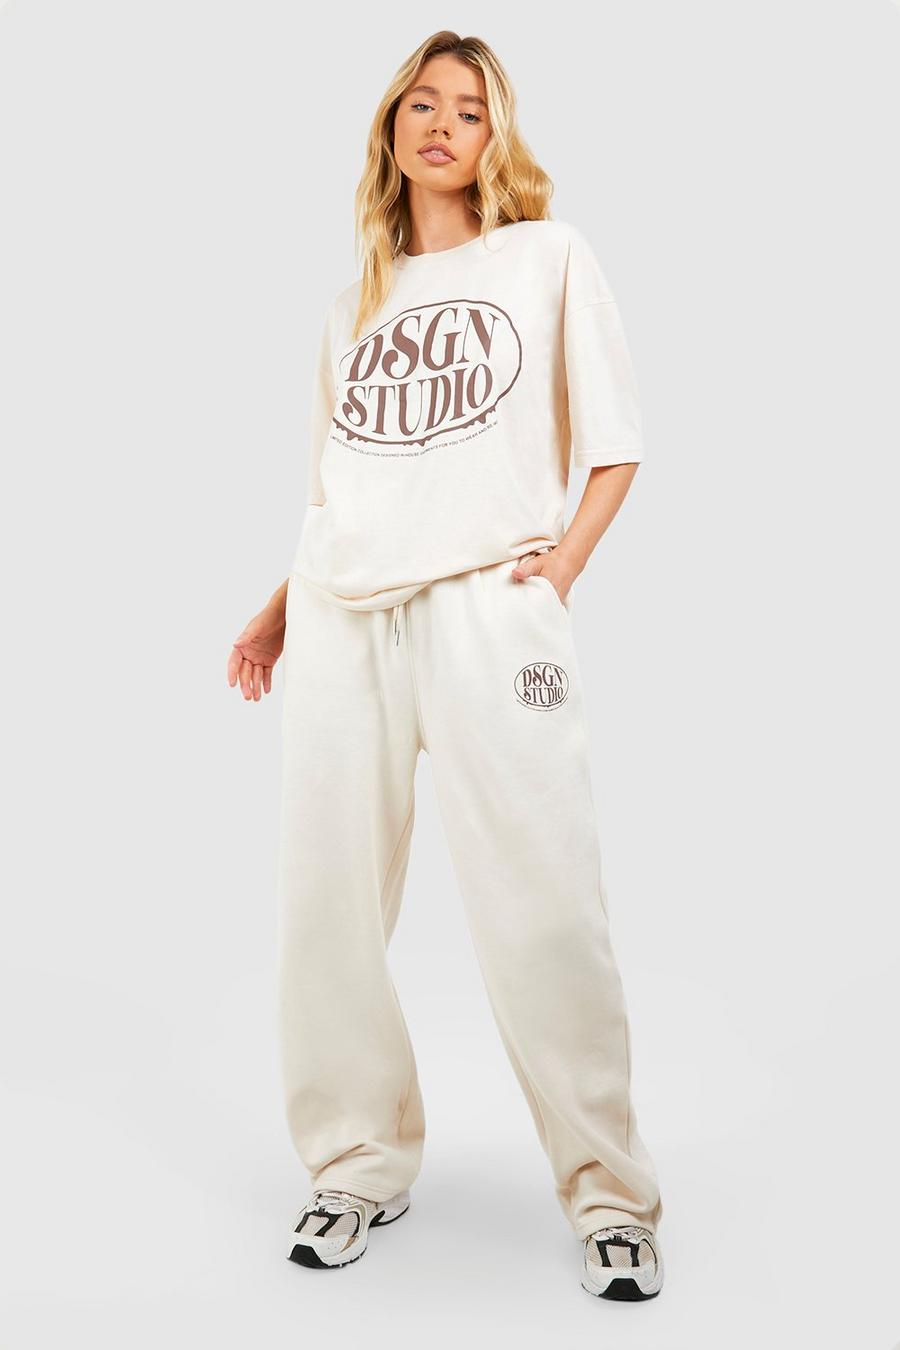 Conjunto de pantalón deportivo y camiseta con eslogan Dsgn Studio, Stone